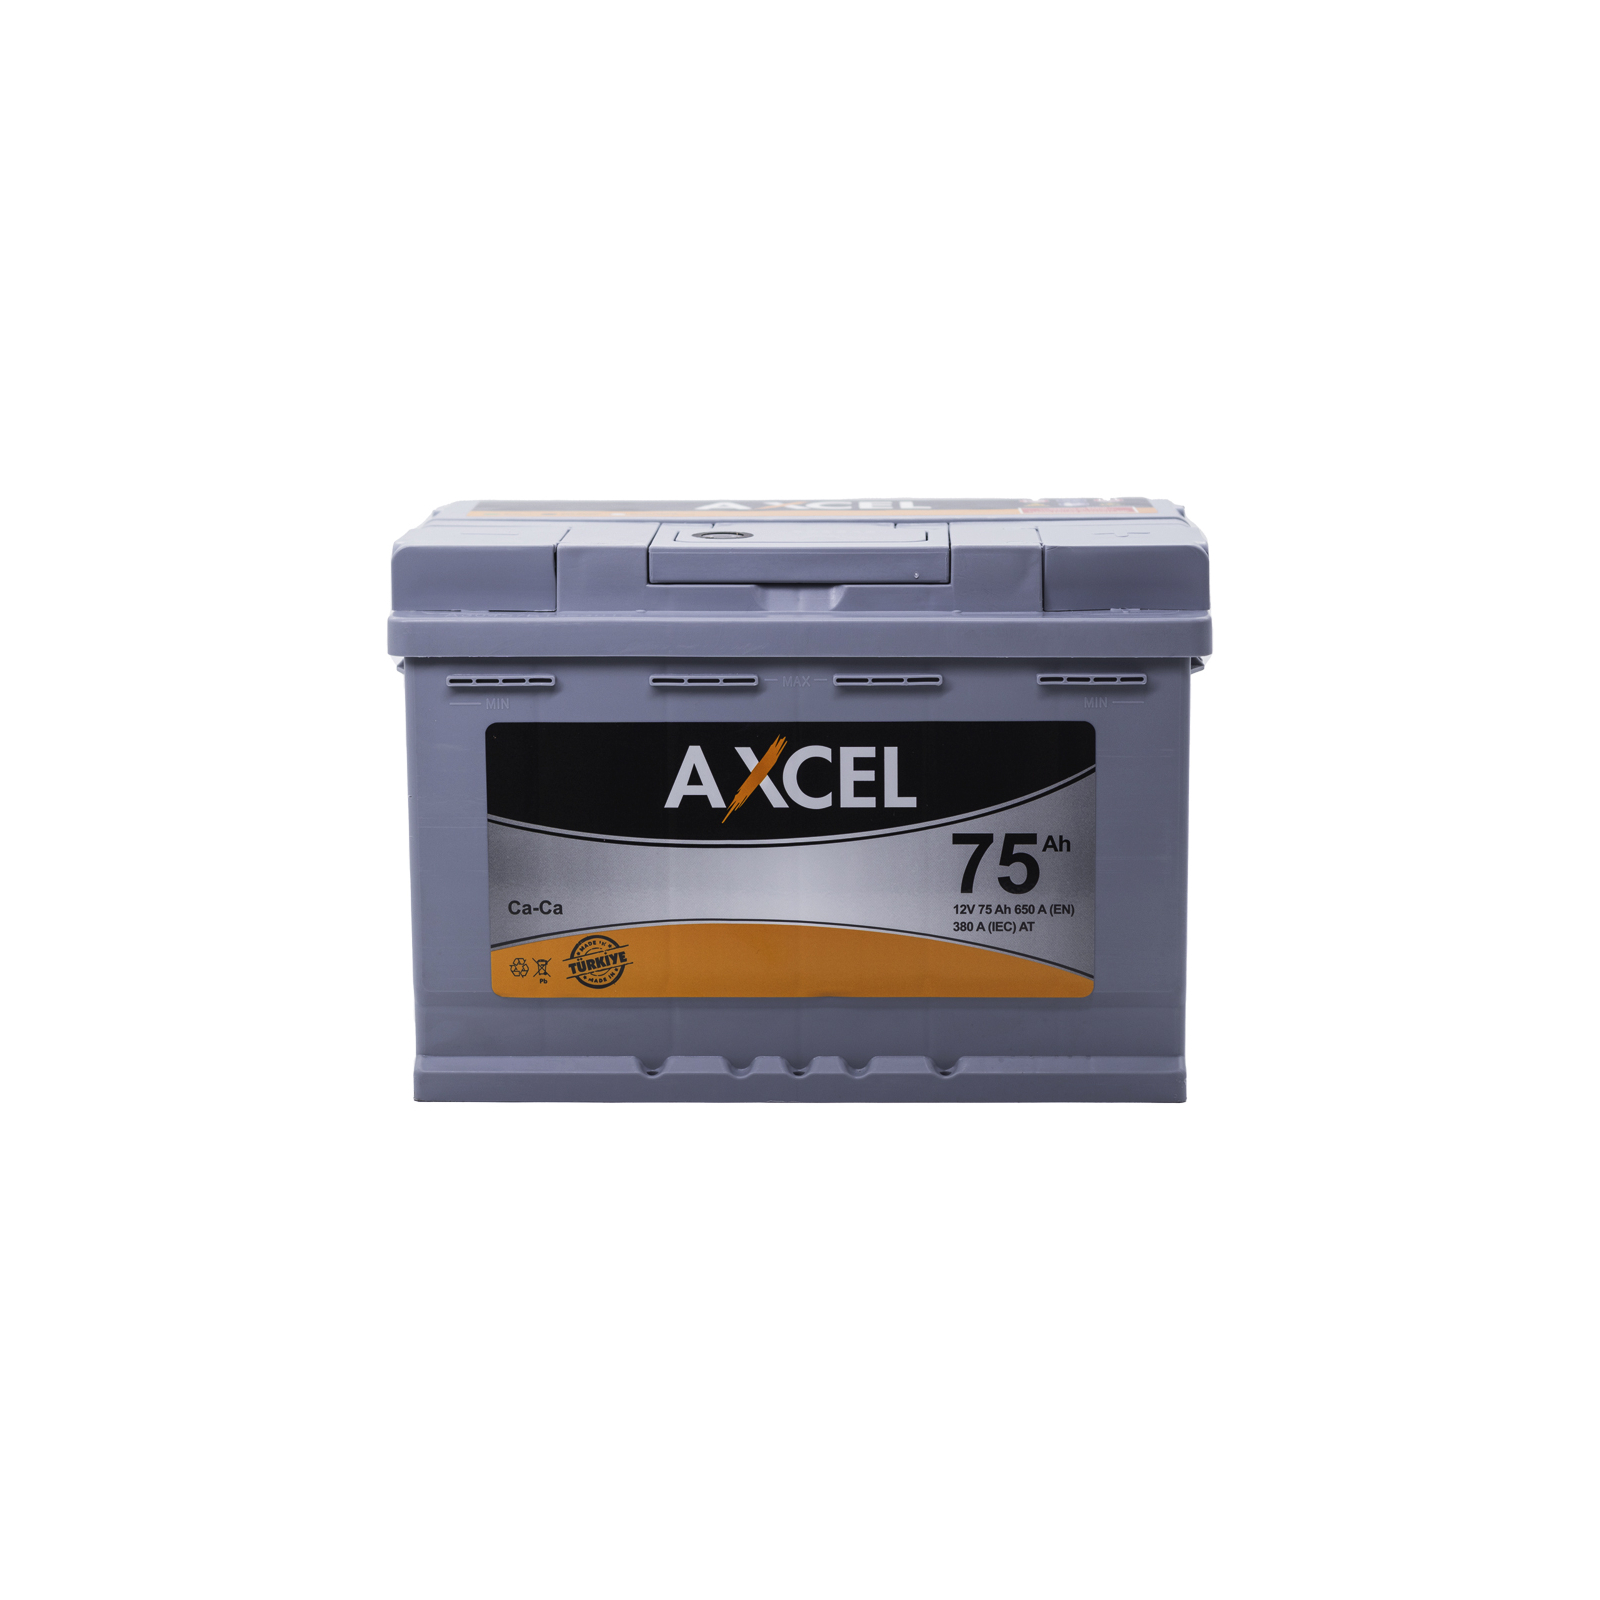 Аккумулятор автомобильный AXCEL 75A +прав. (L3) (650 пуск)